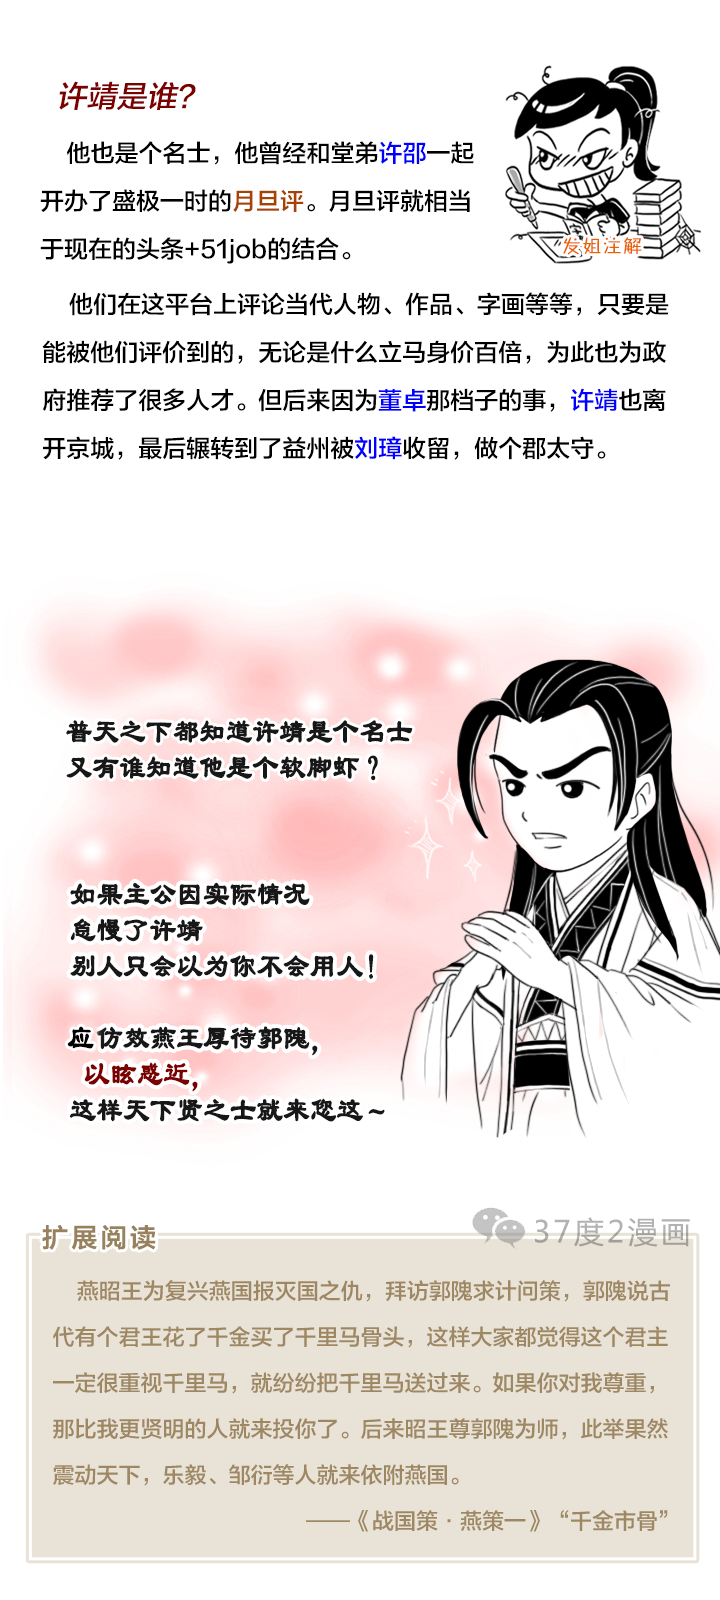 为什么说刘备的转折点是有了军师法正之后？